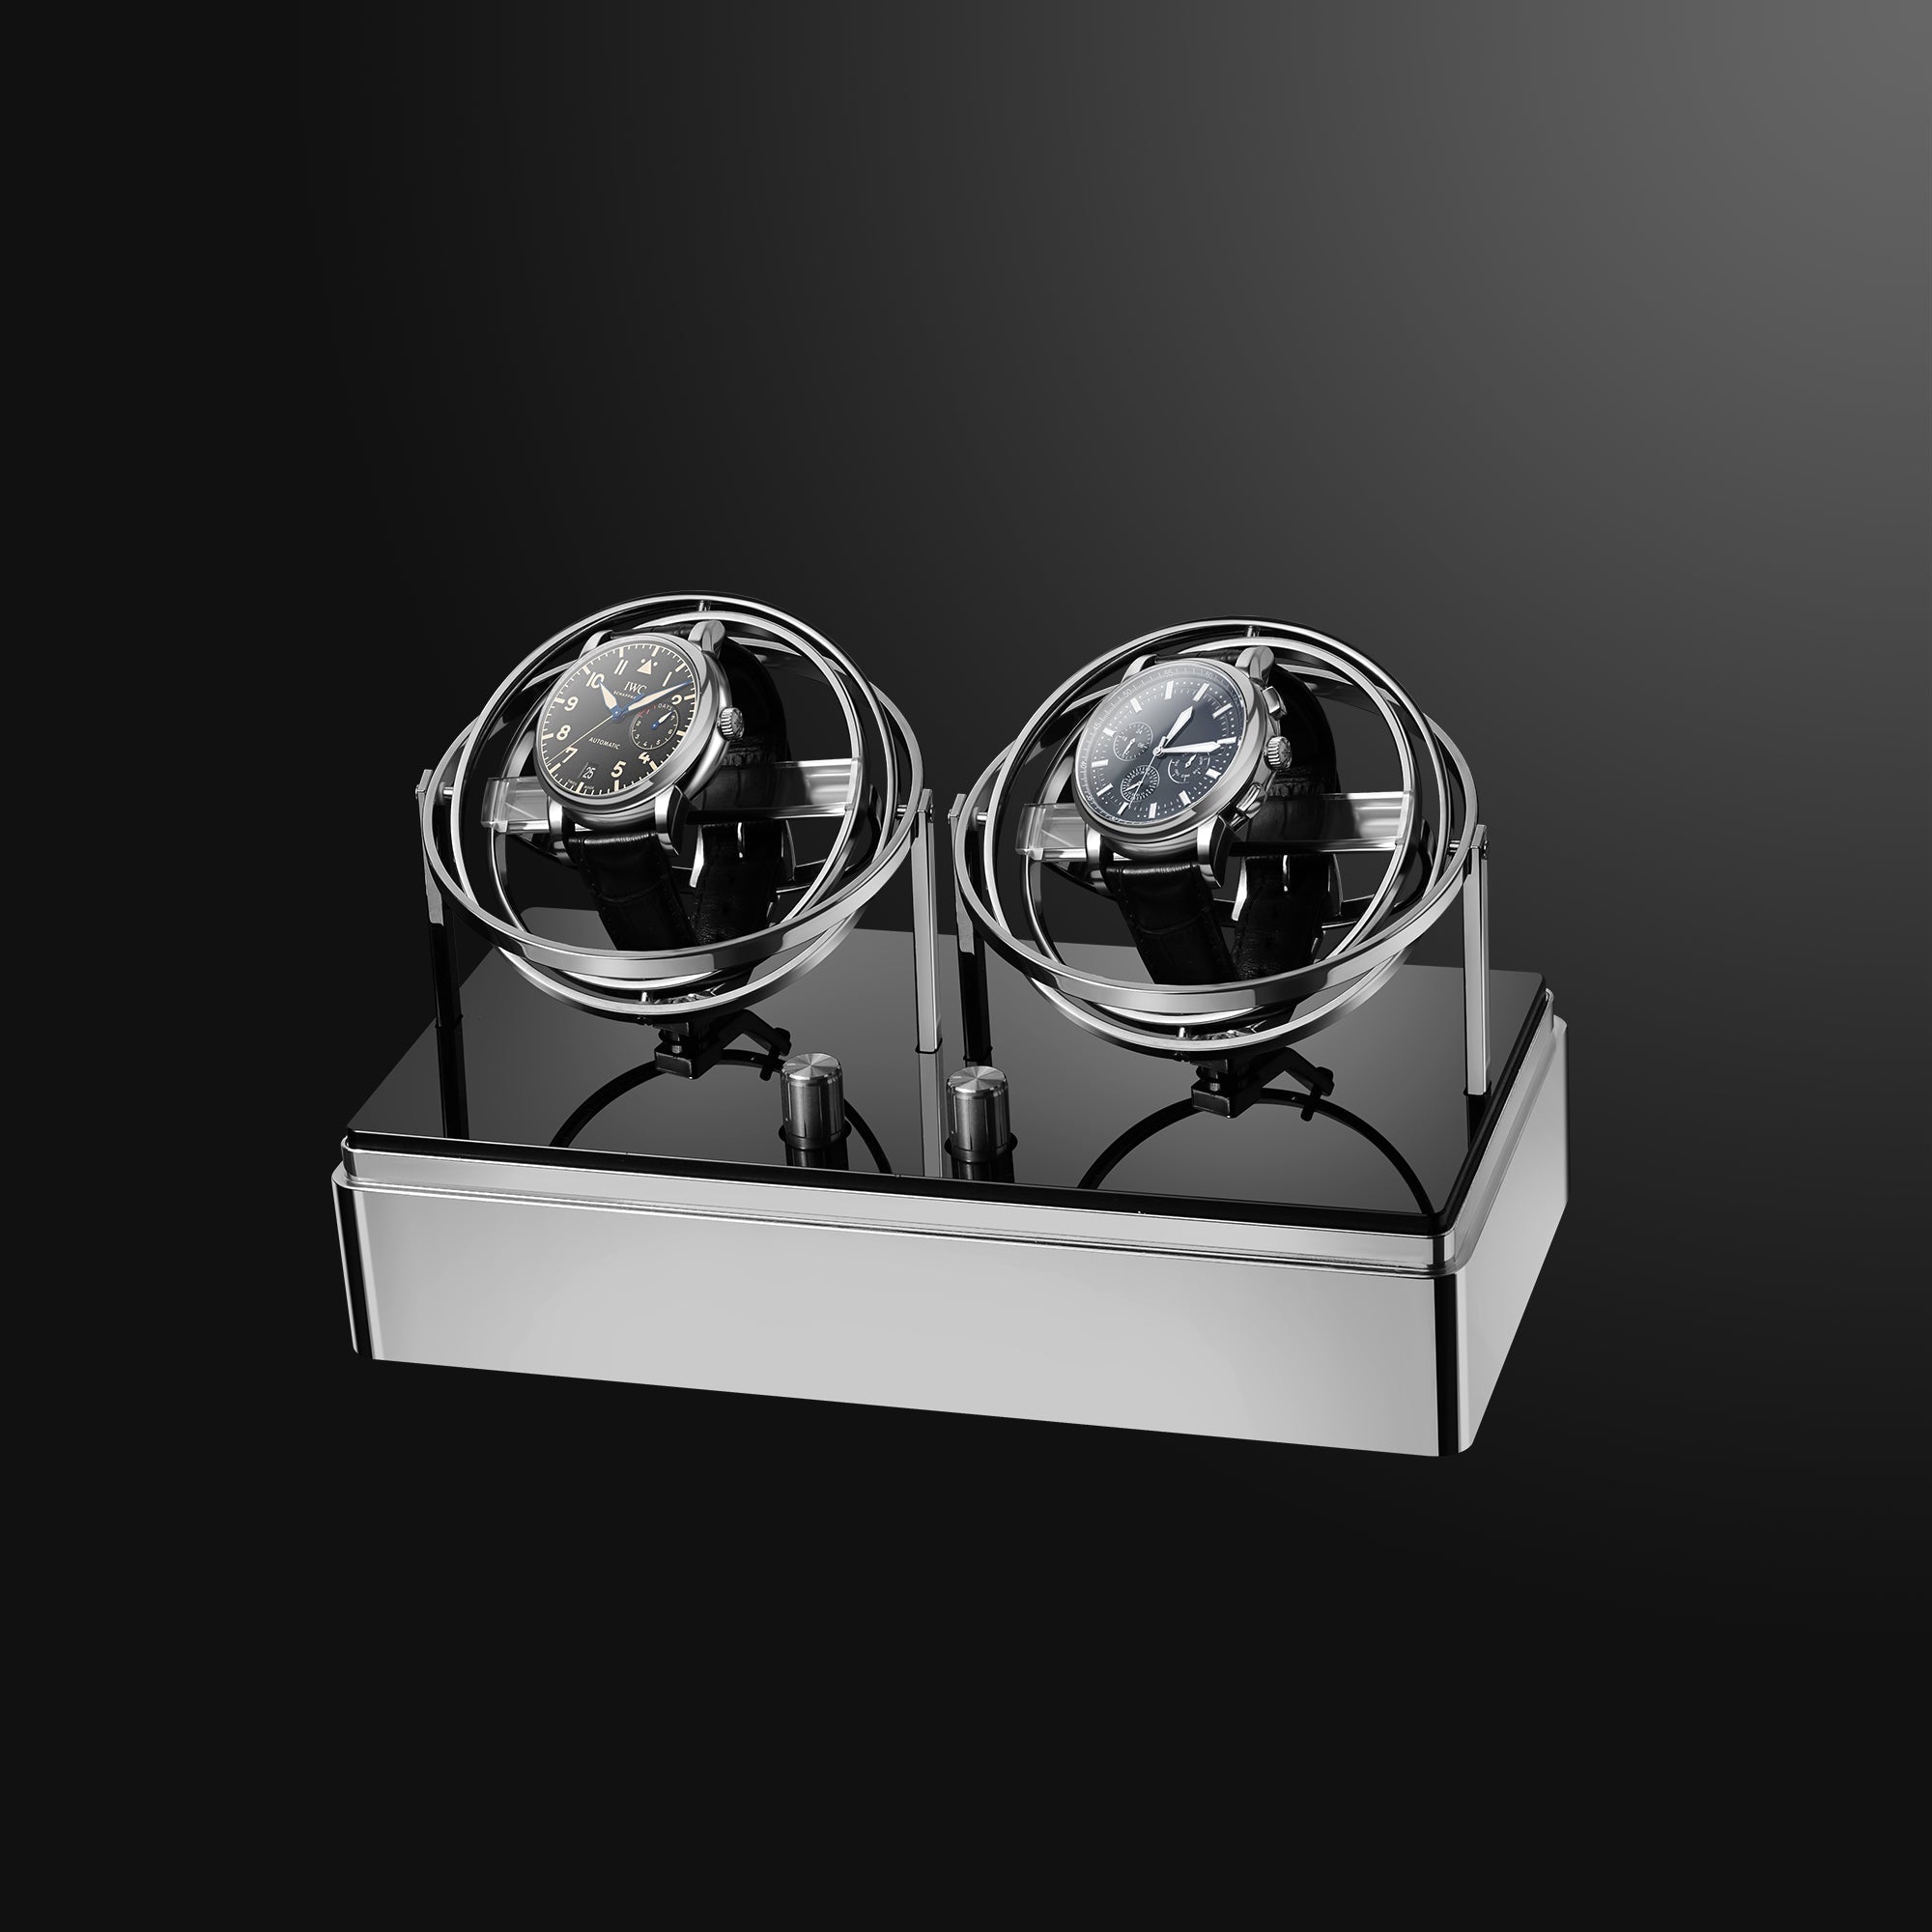 Watch Winder - Orbit Y2 Silver Edition - Gyro Automatic Watch Winder